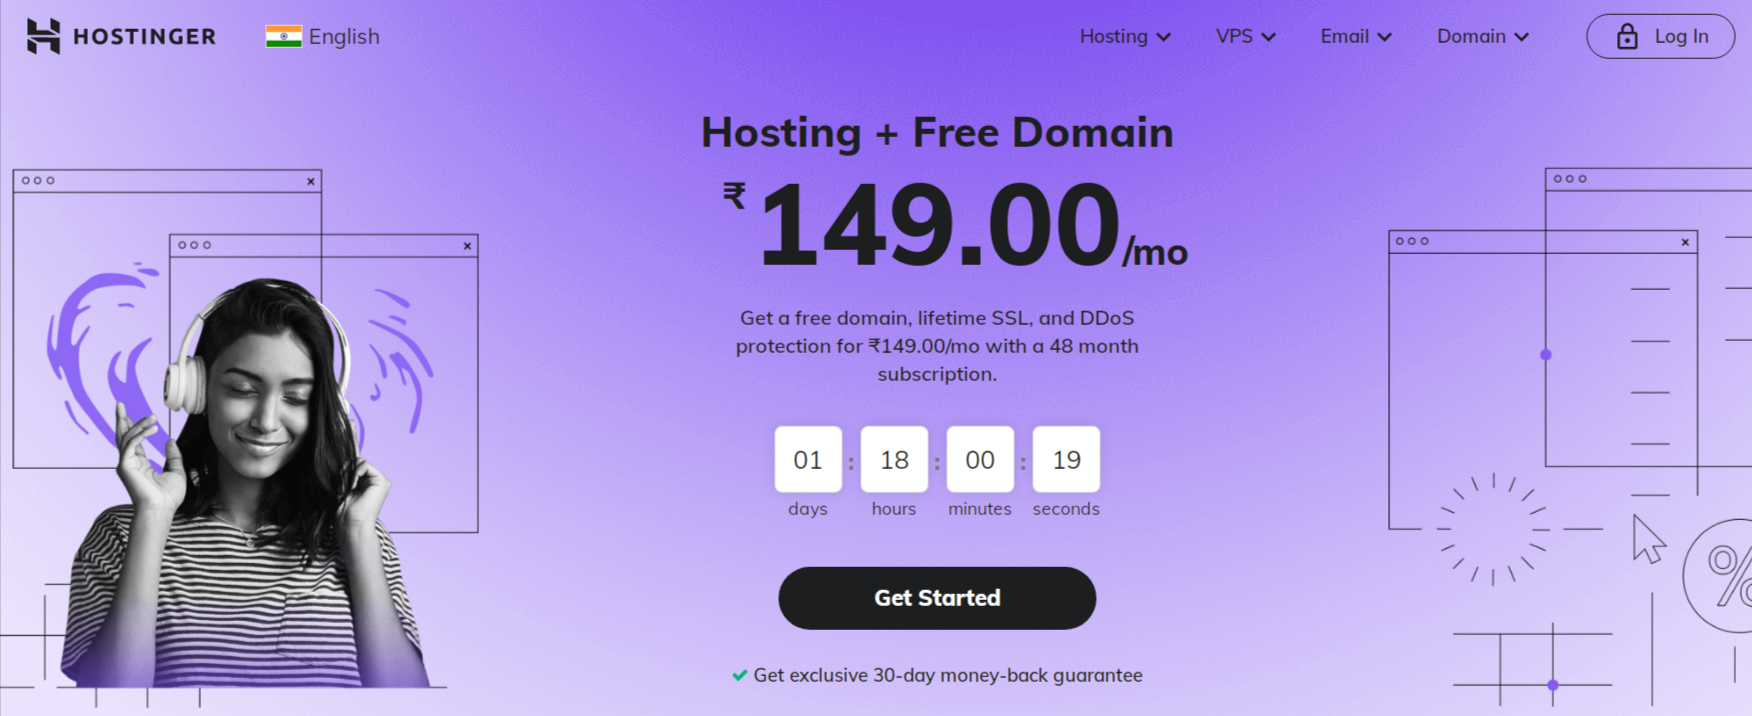 Hostinger-hosting plus domain free